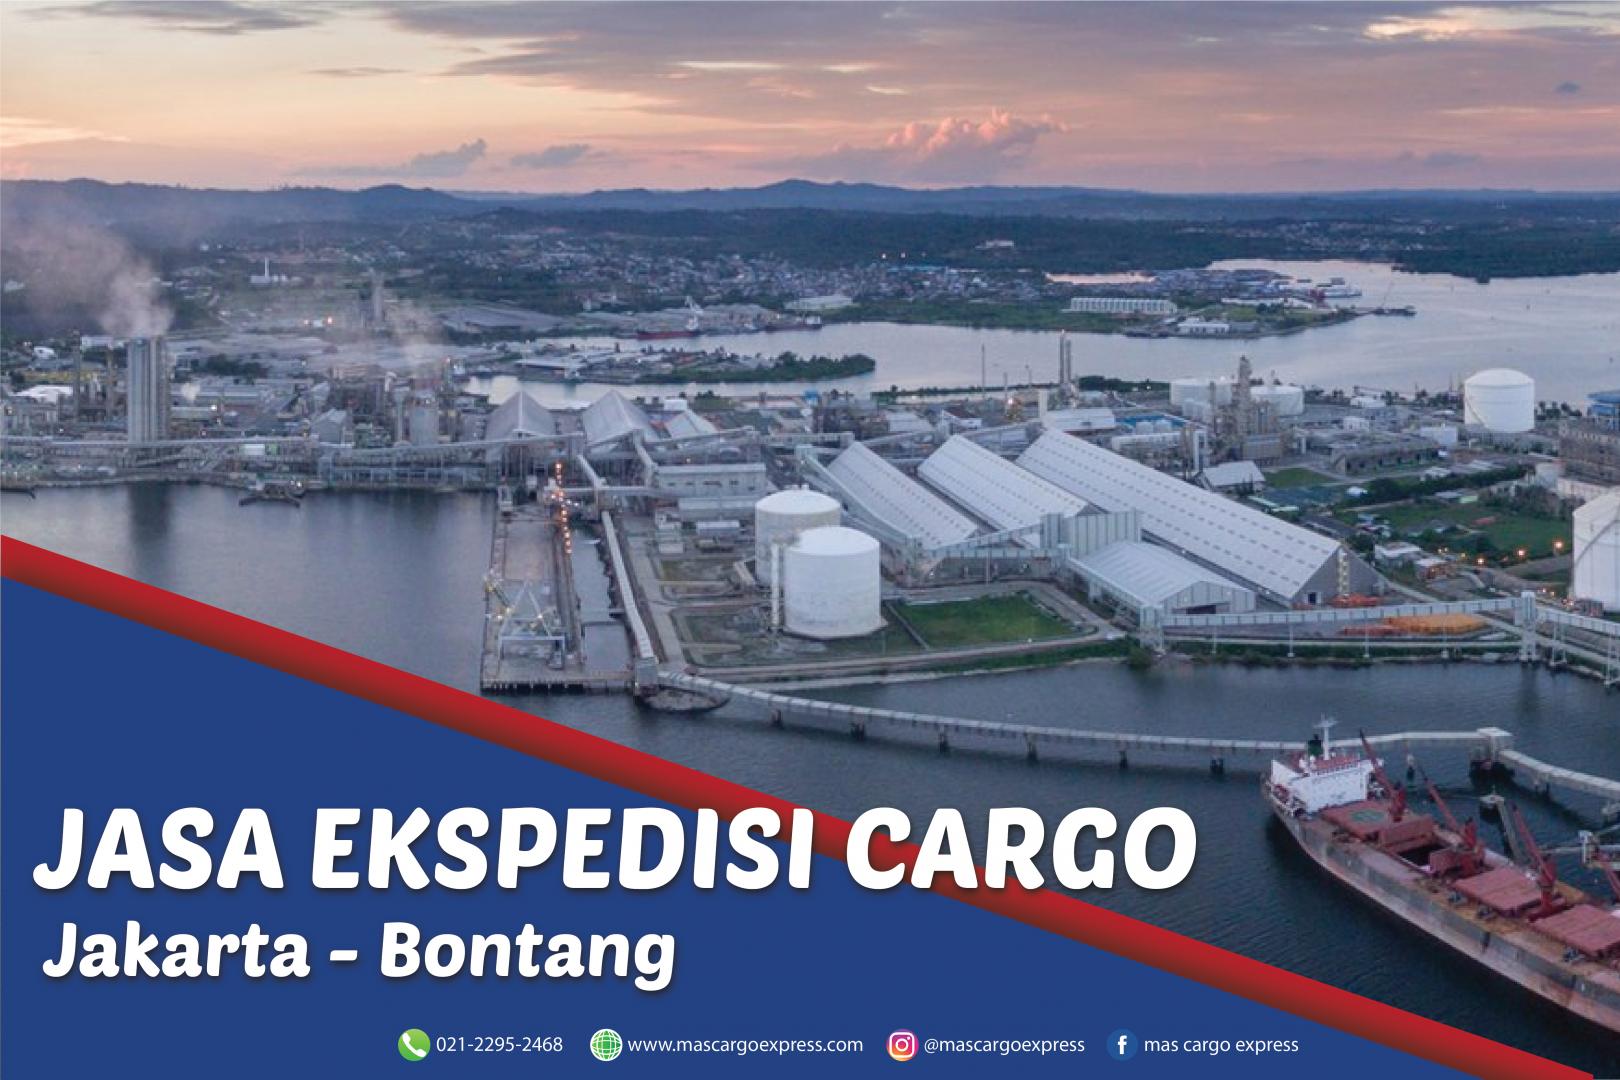 Jasa Ekspedisi Cargo Jakarta ke Bontang Murah, Cepat, Aman dan Bergaransi